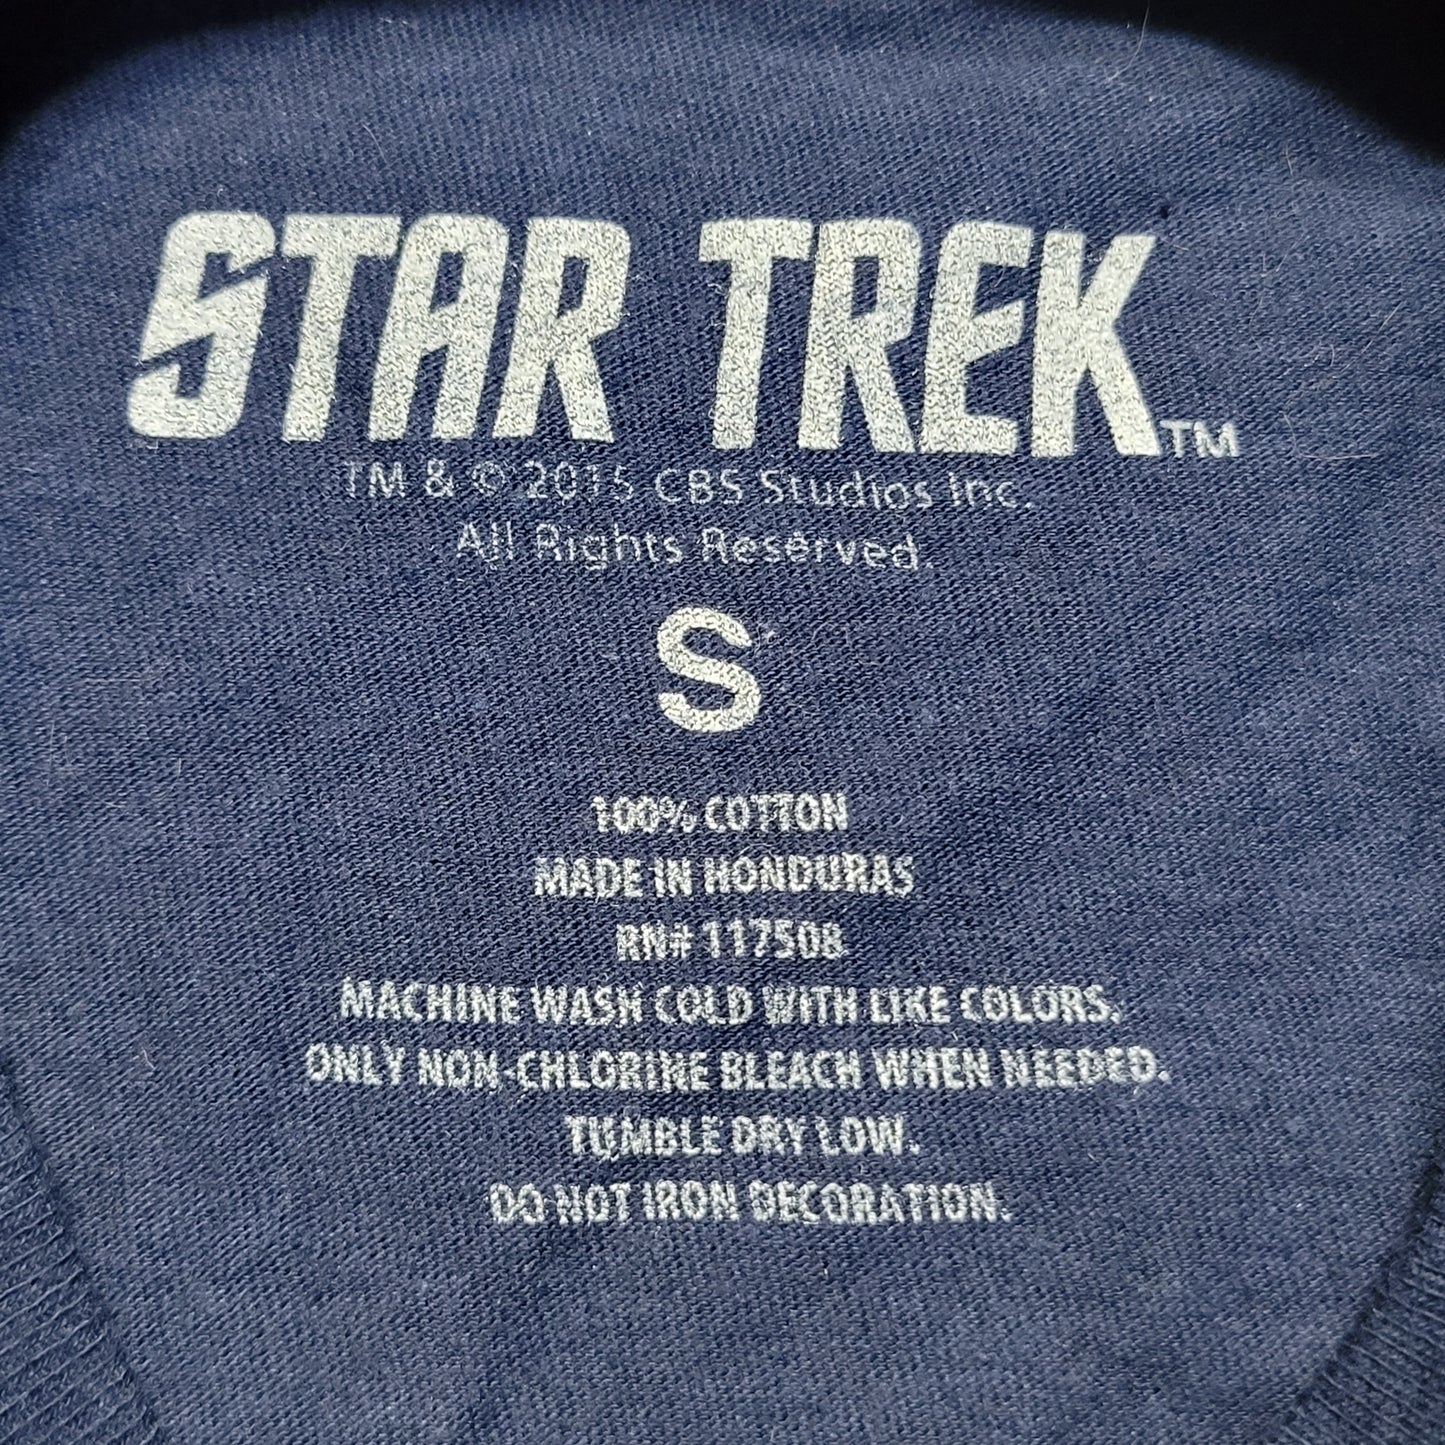 Pre-Owned Unisex Small (S) 2015 Star Trek Spock "Trek Yourself" T-Shirt